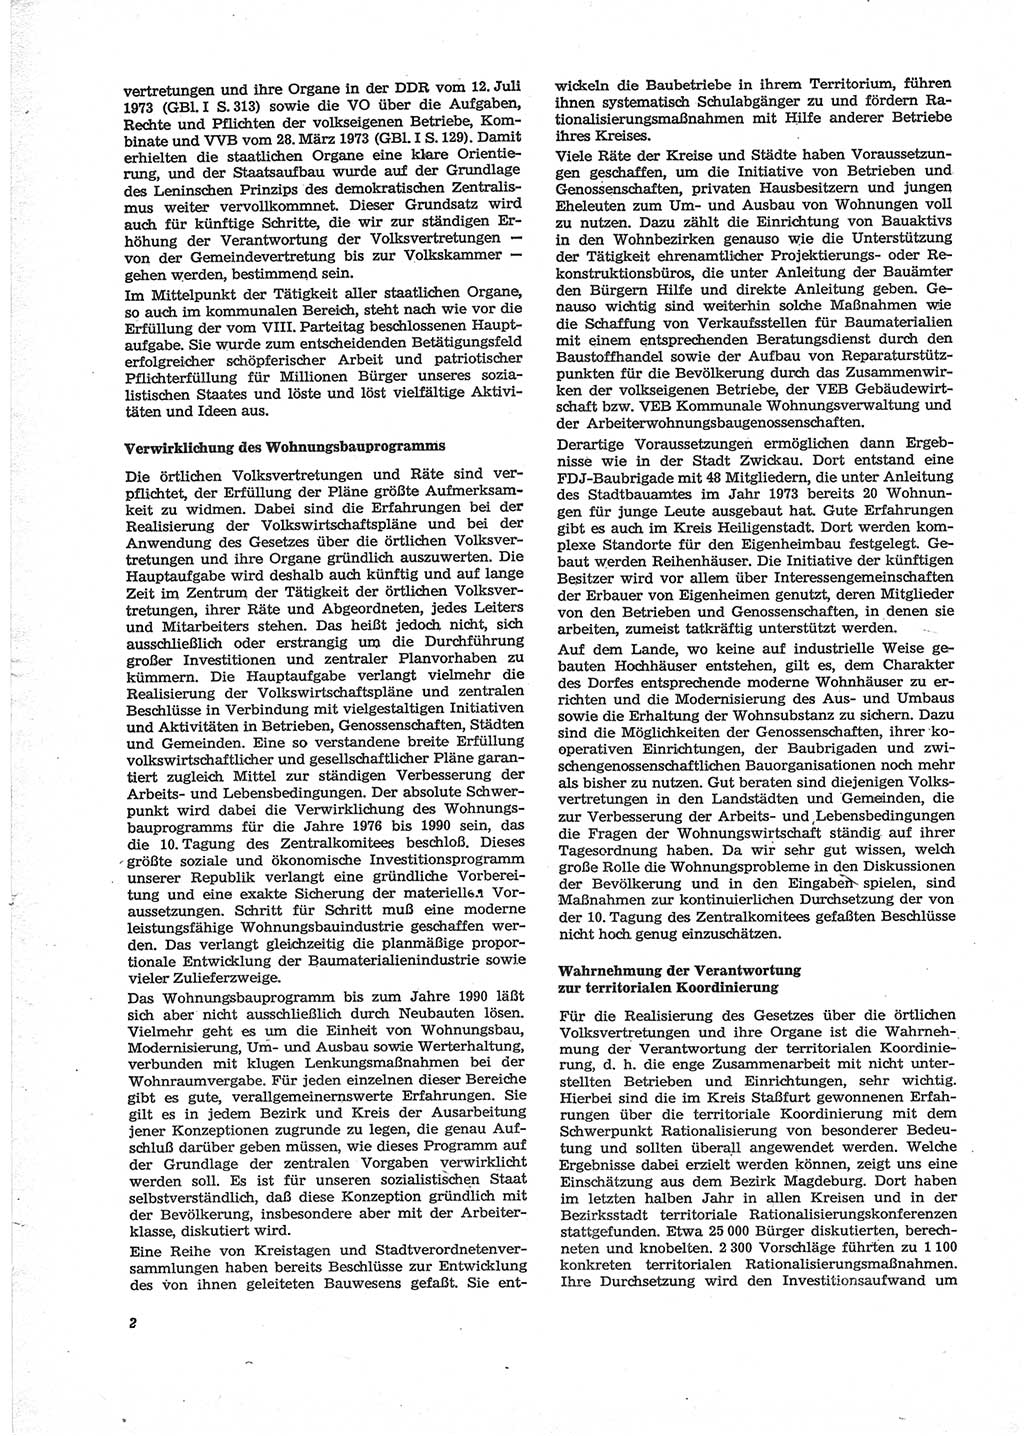 Neue Justiz (NJ), Zeitschrift für Recht und Rechtswissenschaft [Deutsche Demokratische Republik (DDR)], 28. Jahrgang 1974, Seite 2 (NJ DDR 1974, S. 2)